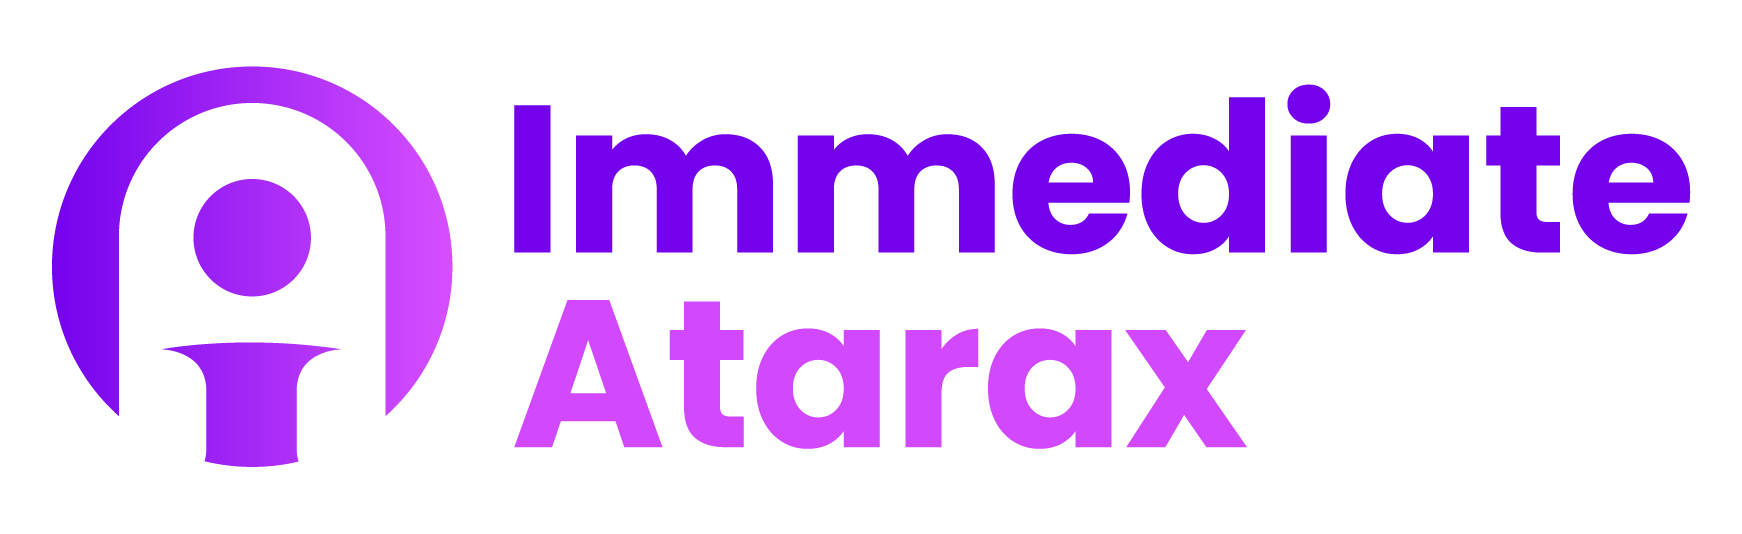 Immediate Atarax - COMMENCEZ VOTRE VOYAGE COMMERCIAL AUJOURD'HUI